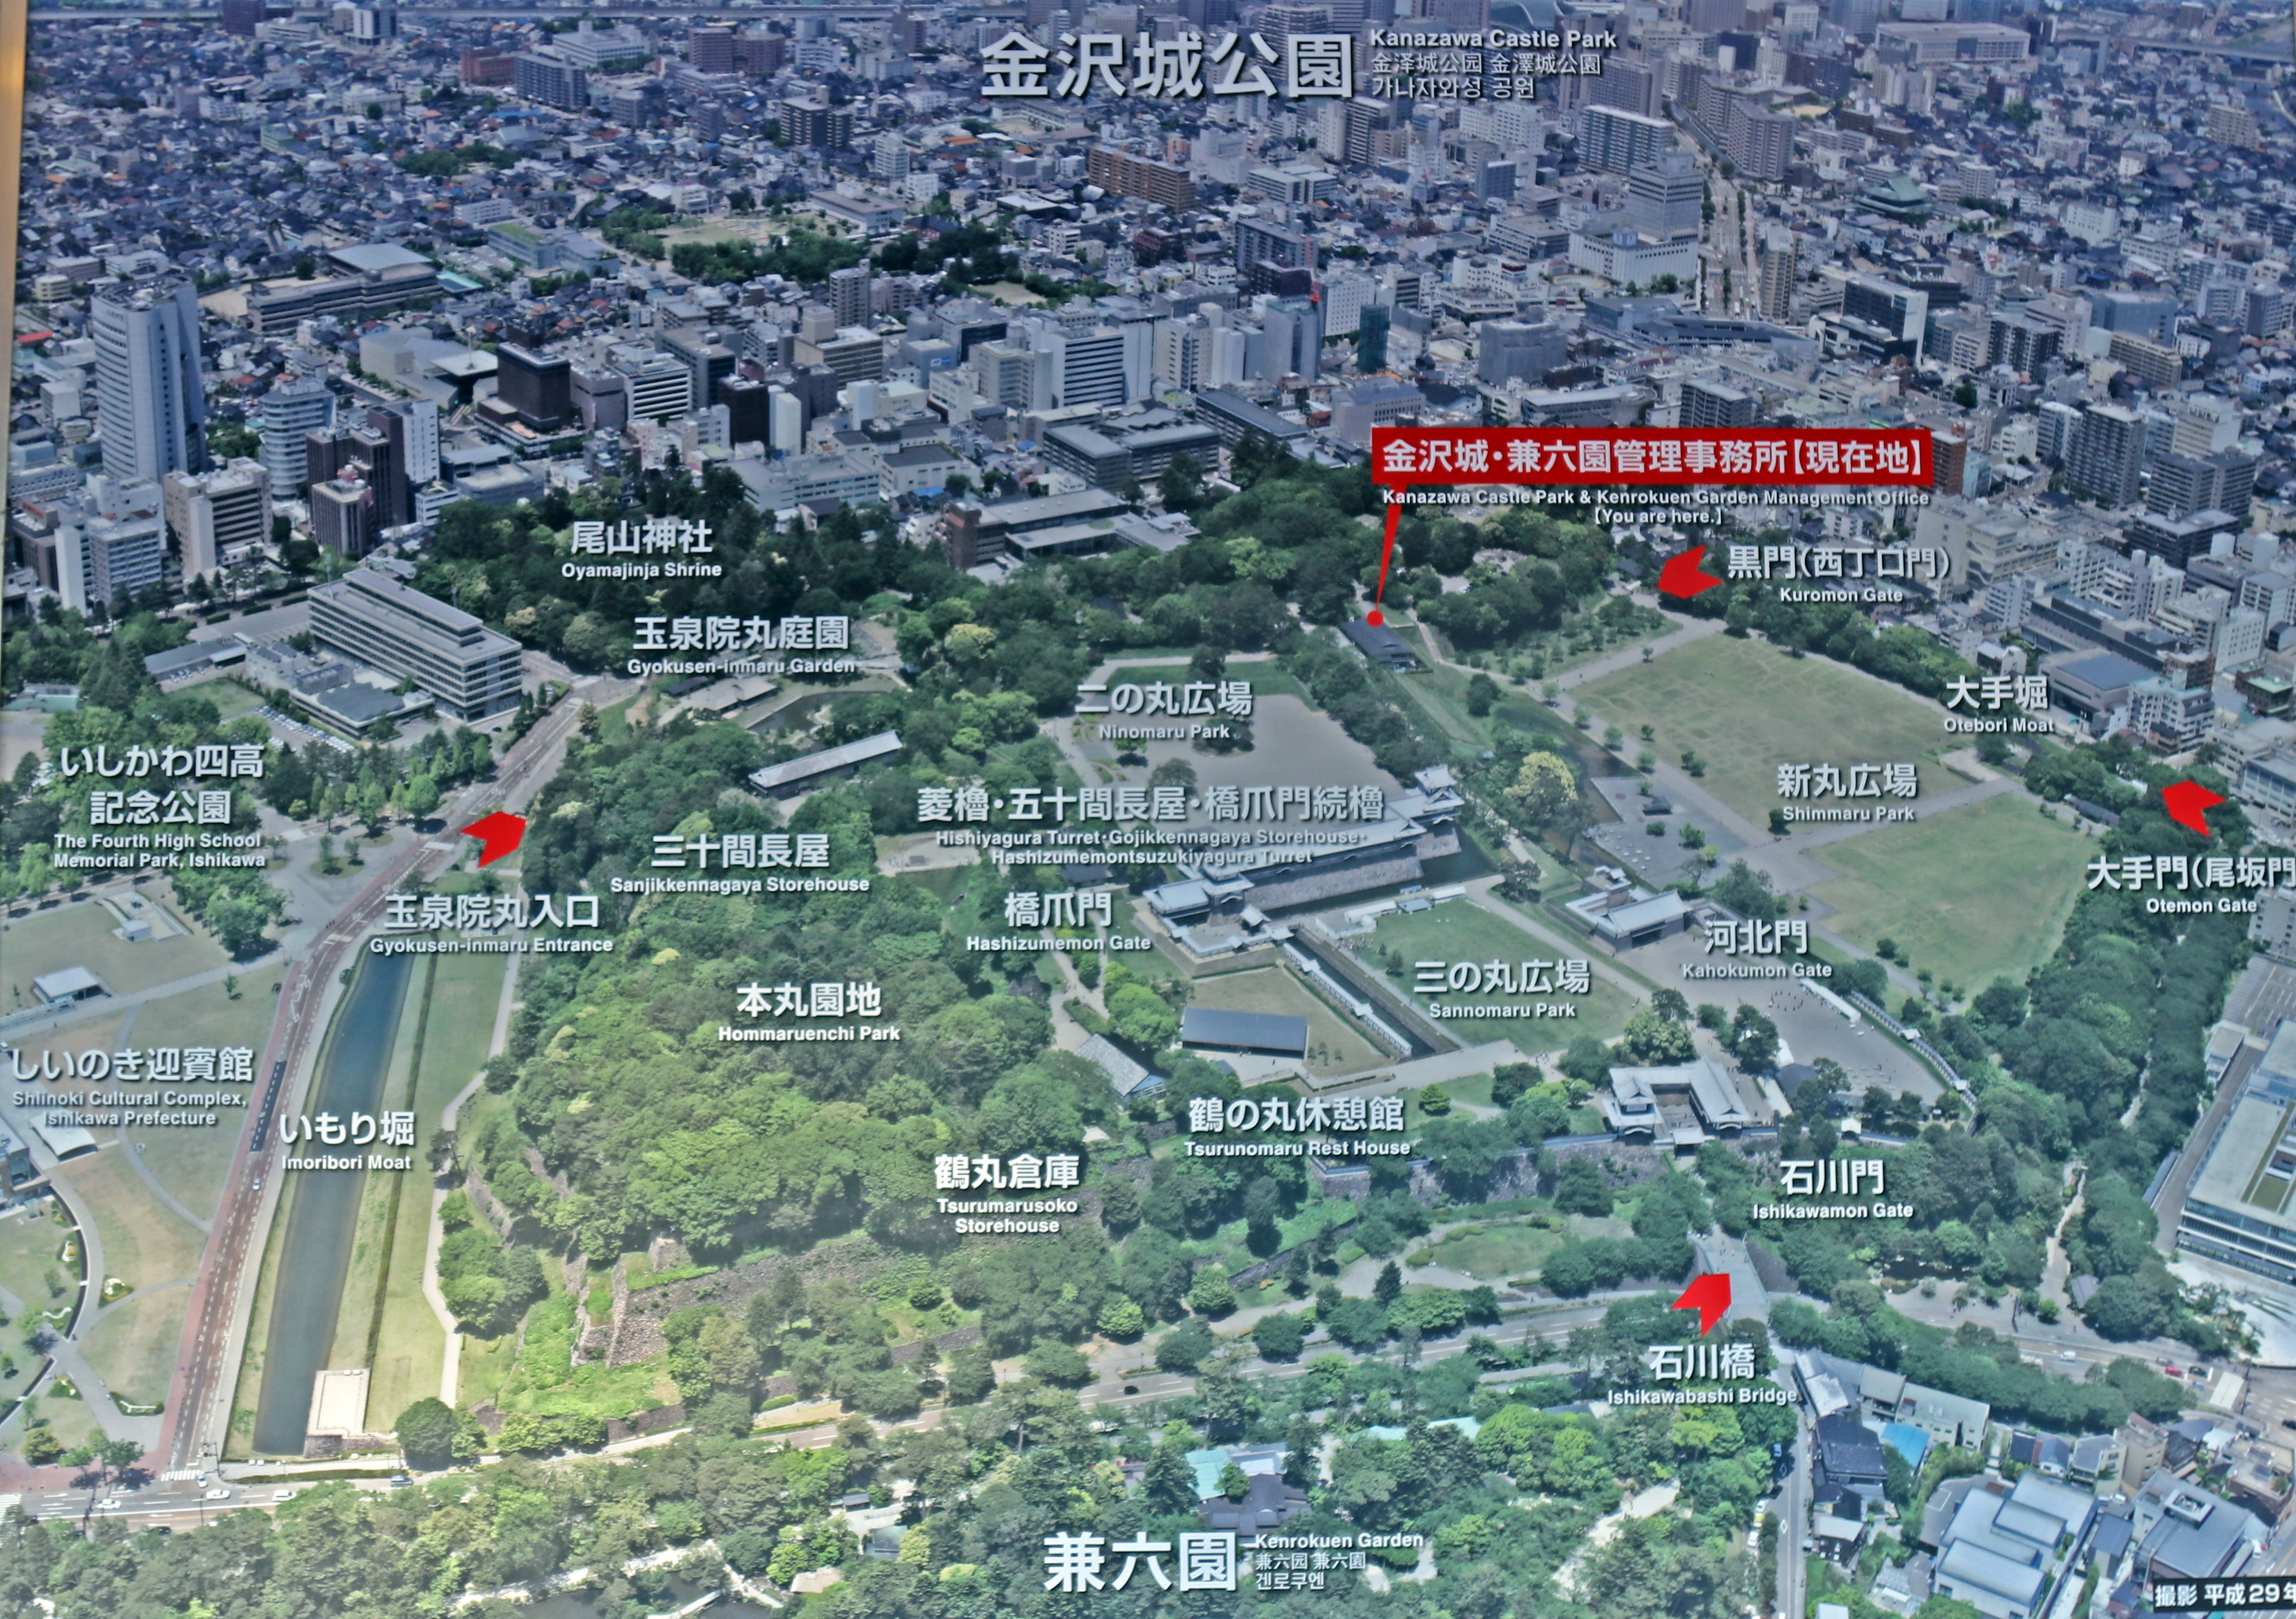 Kanazawa Castle Grounds Map